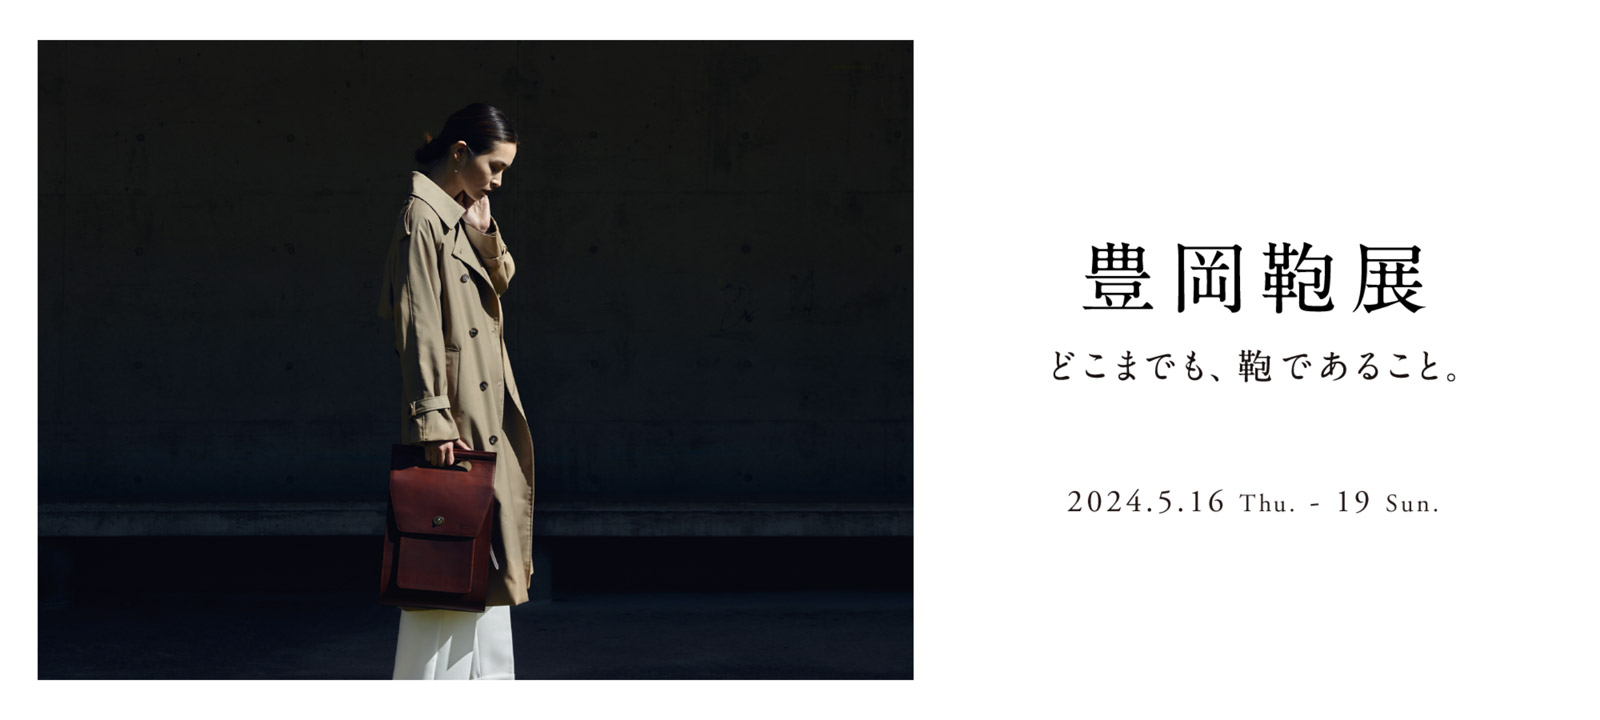 どこまでも、鞄であること 豊岡鞄展 2024.5.16(Thu)〜19(Sun) 10:00 - 19:00